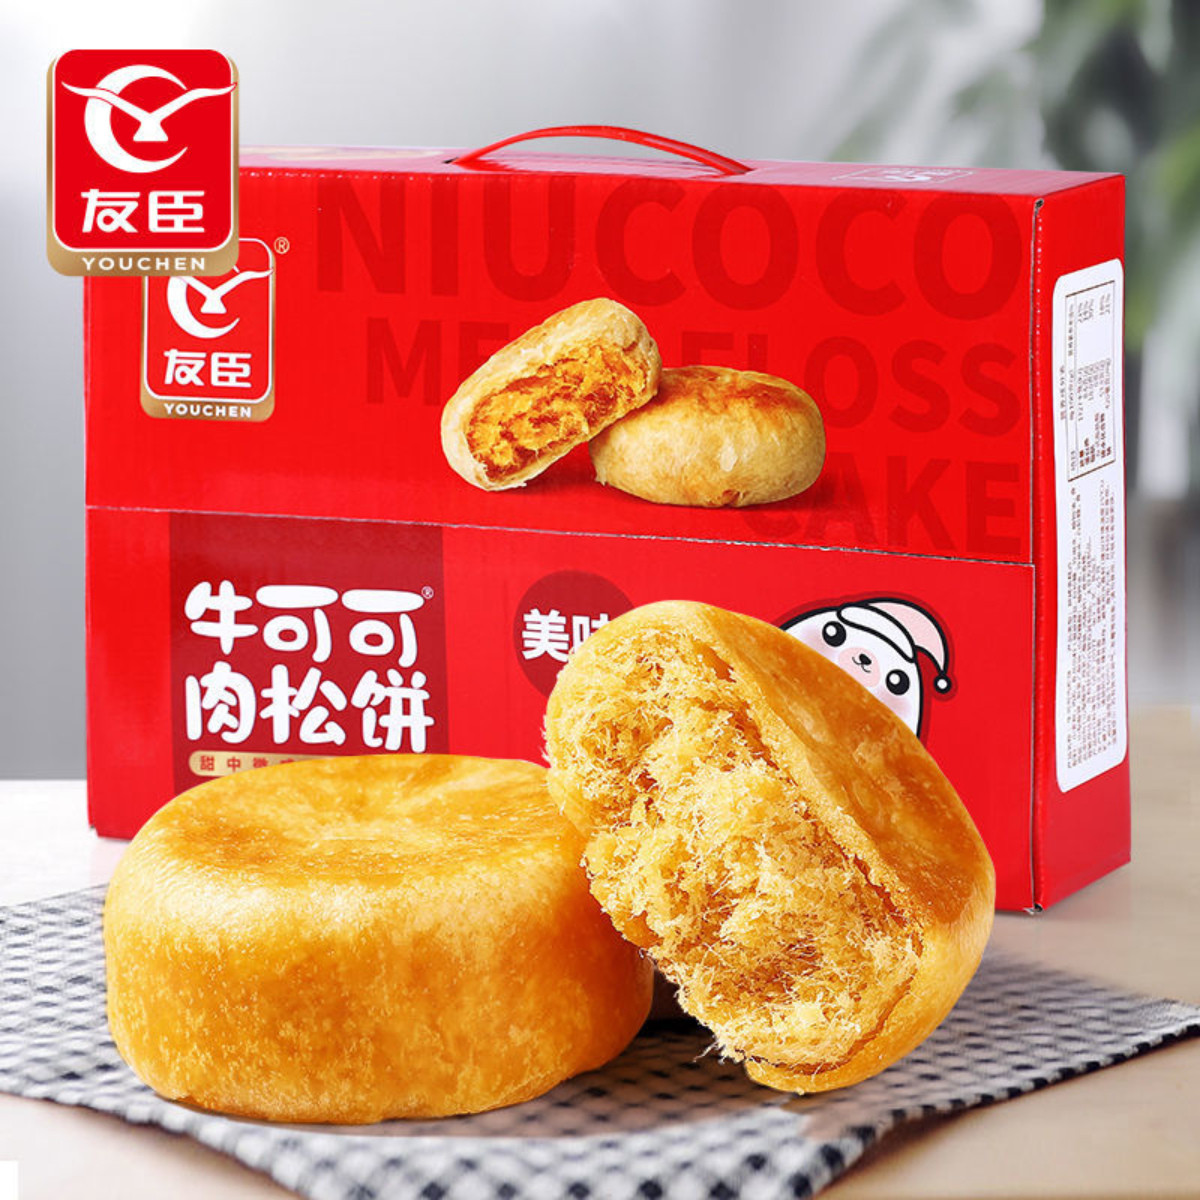 原味肉松饼1250g/整箱福建特产休闲糕点零食小吃情人节礼盒